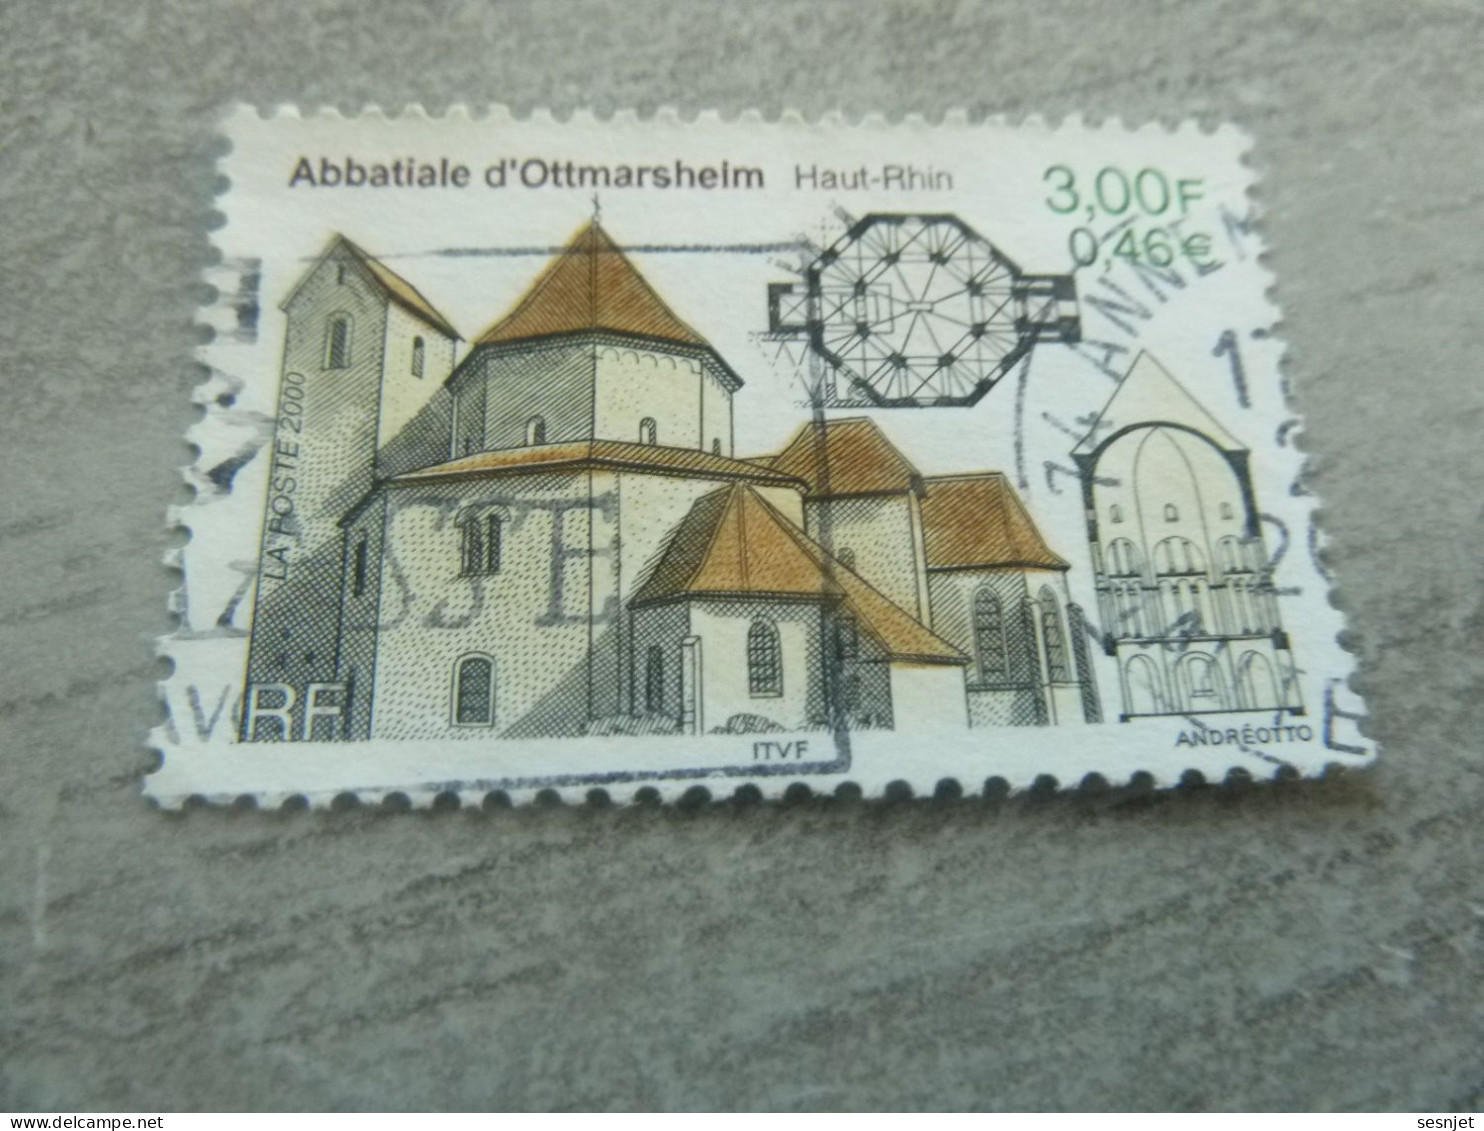 Abbatiale D'Ottmarsheim - Haut-Rhin - 3f. (0.46 €) - Yt 3336 - Multicolore - Oblitéré - Année 2000 - - Kirchen U. Kathedralen